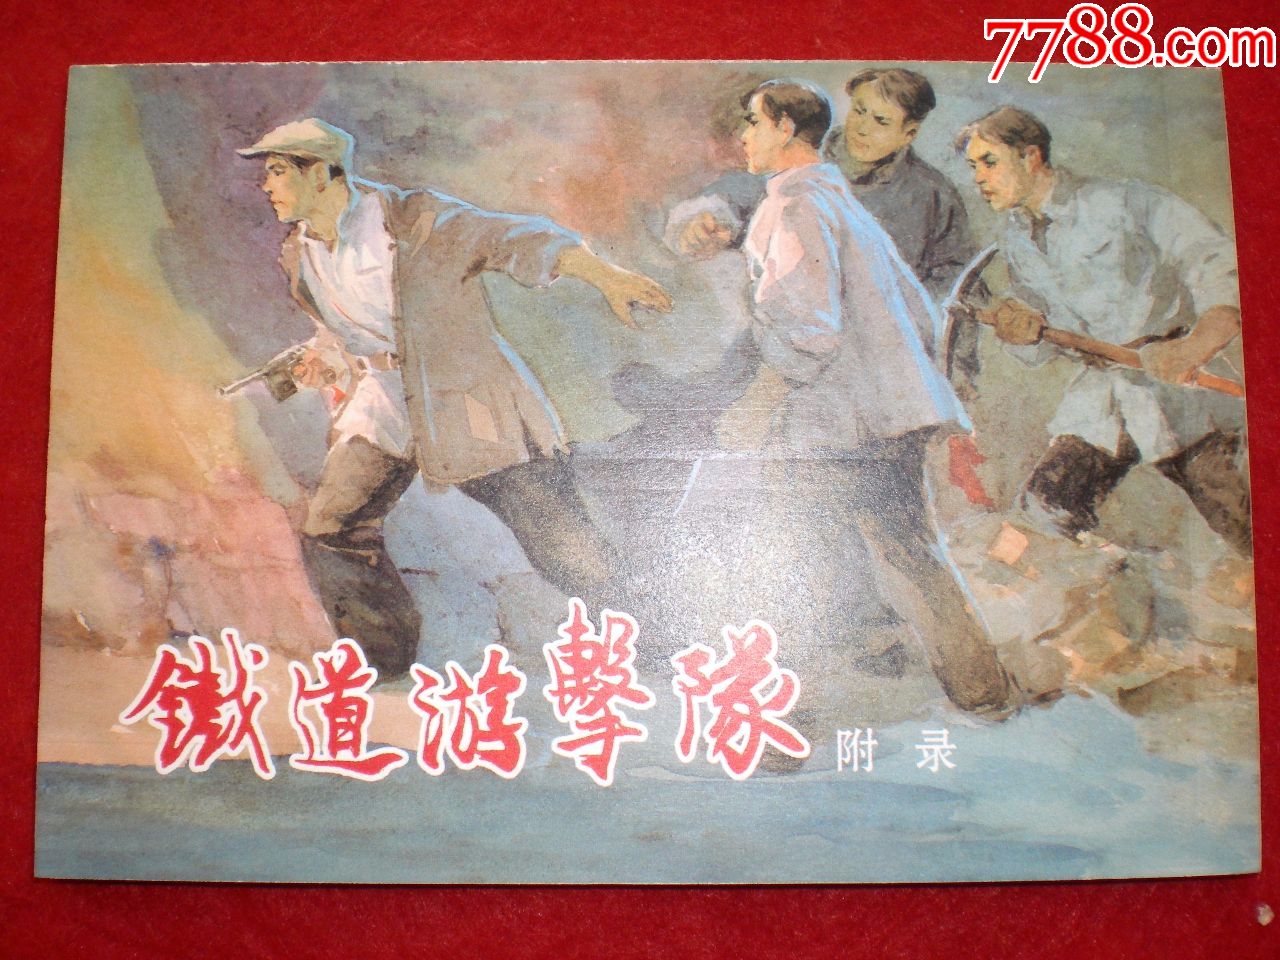 获奖连环画《铁道游击队》韩和平,丁斌曾绘画曾绘画,一版二印,上海